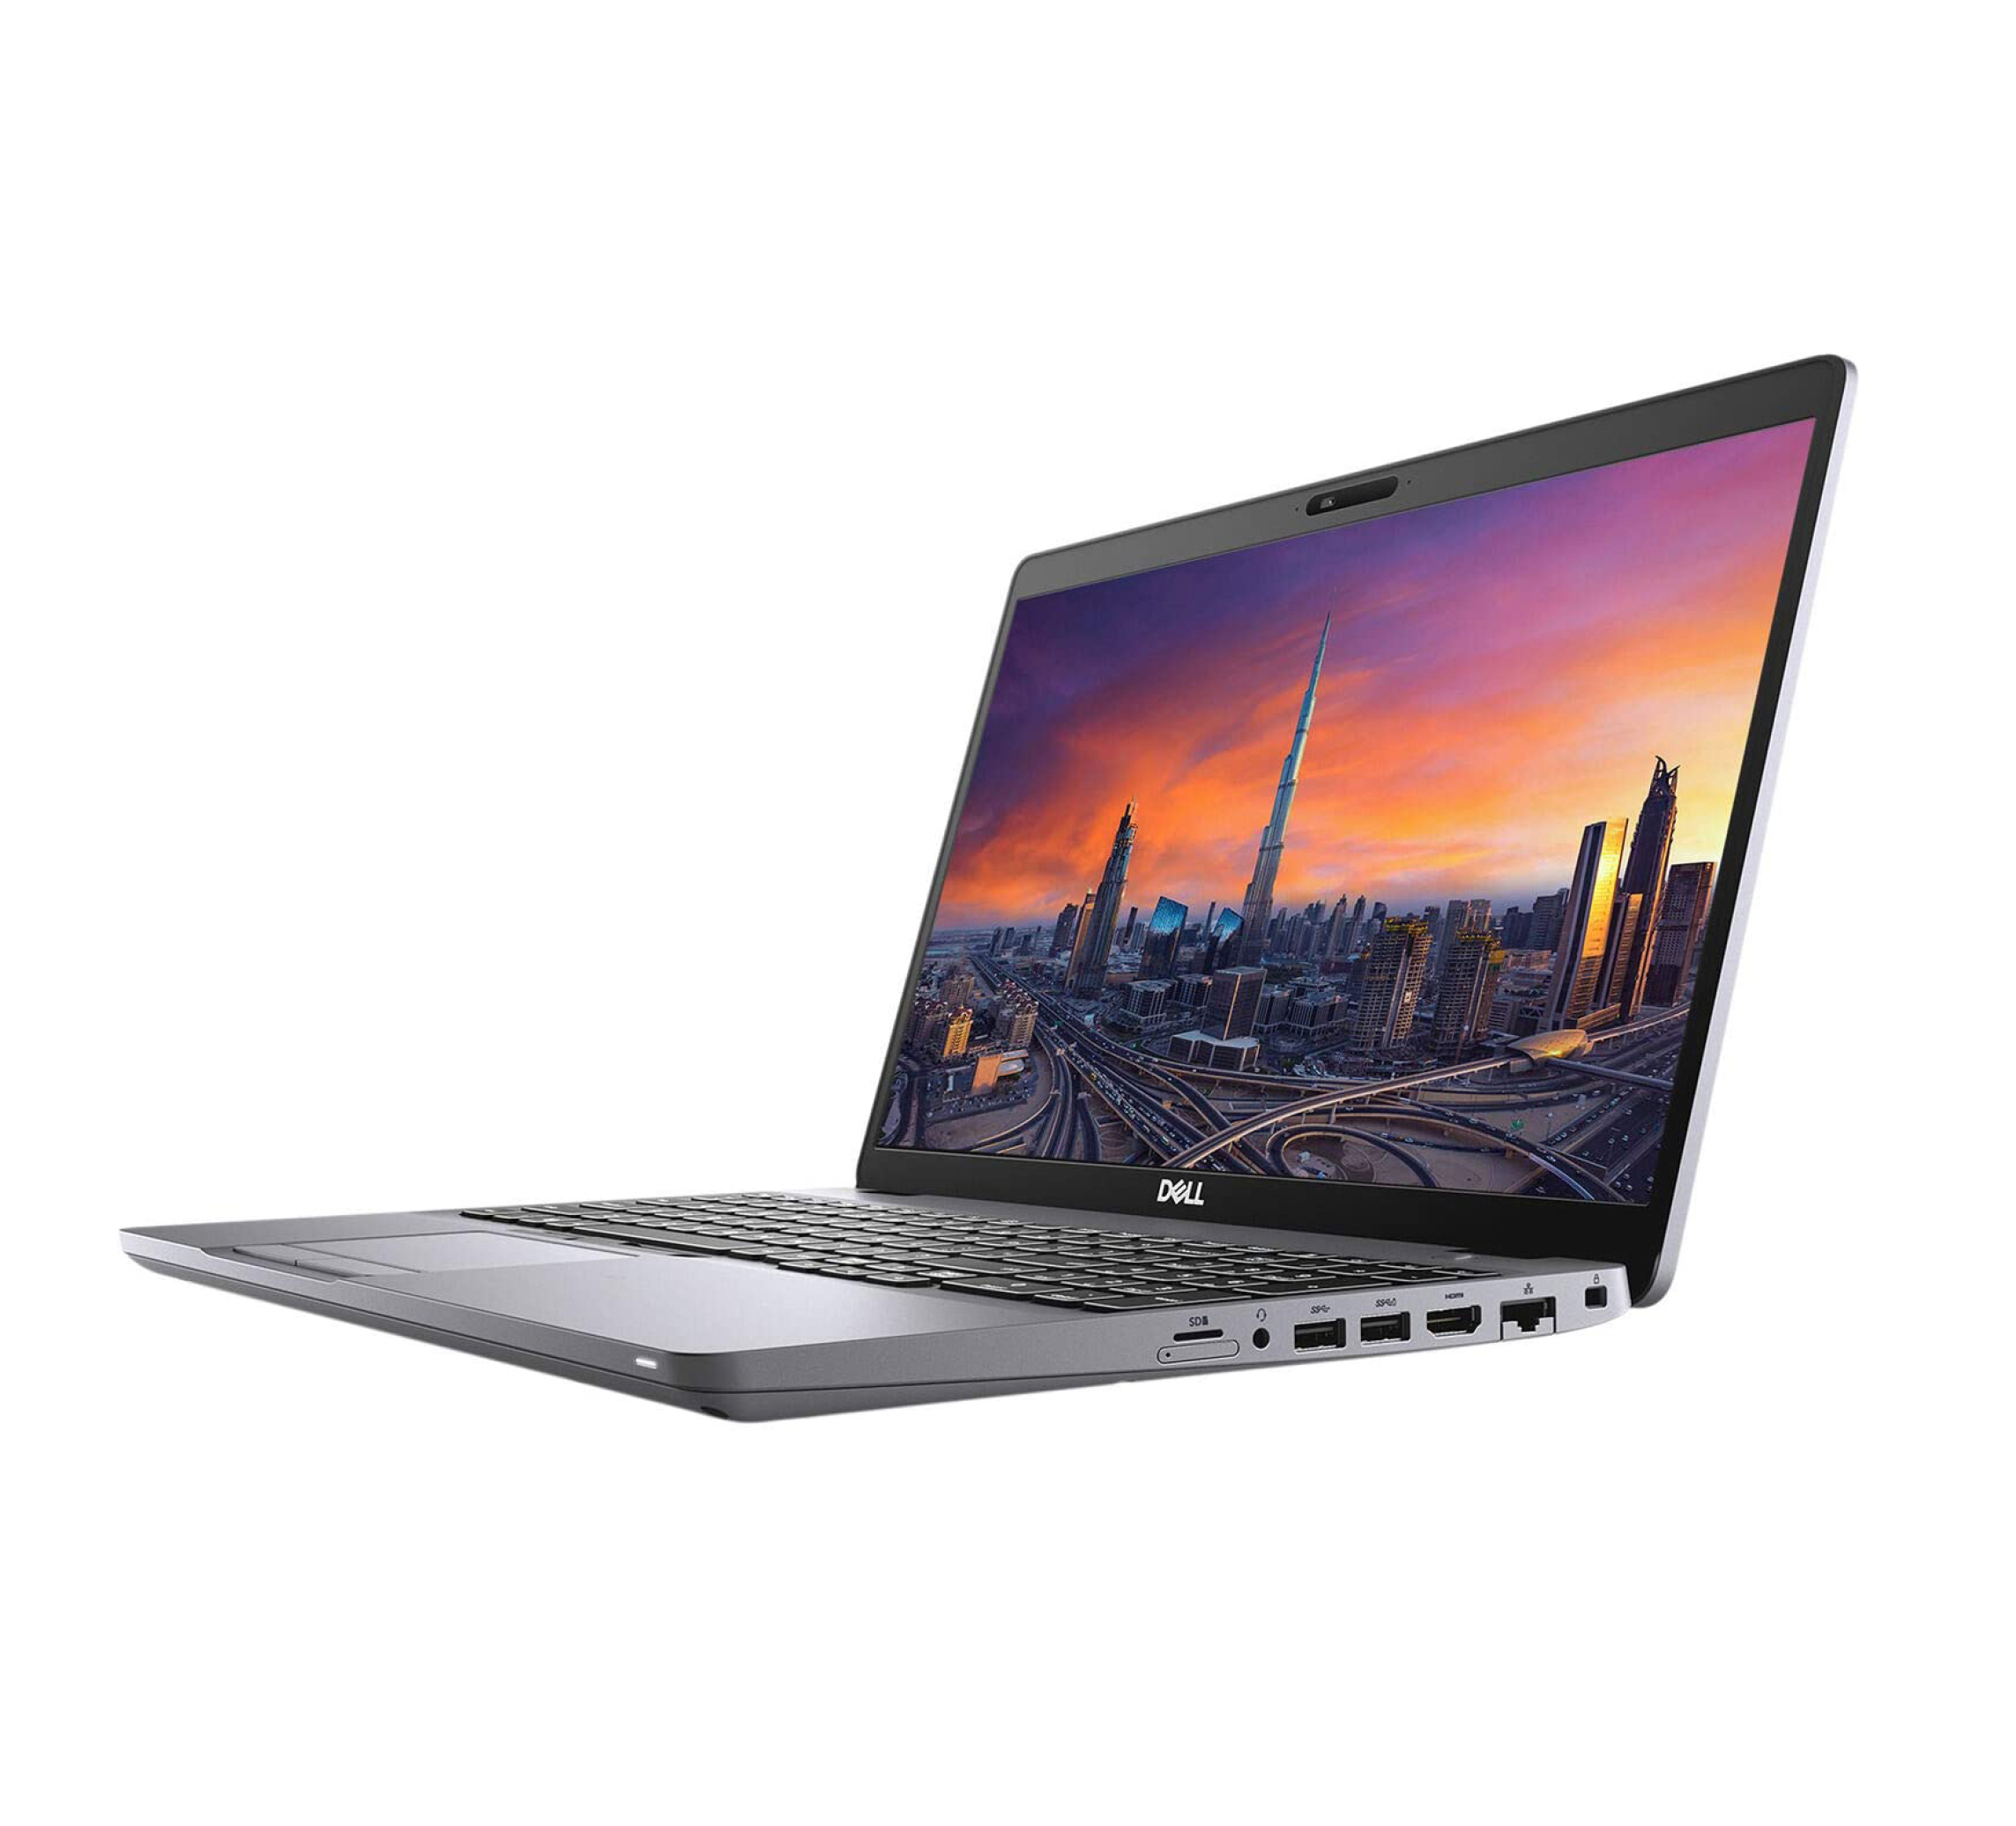  خرید،قیمت و مشخصات فنی لپ تاپ Dell Precision 3550 | لاکچری لپ تاپ 